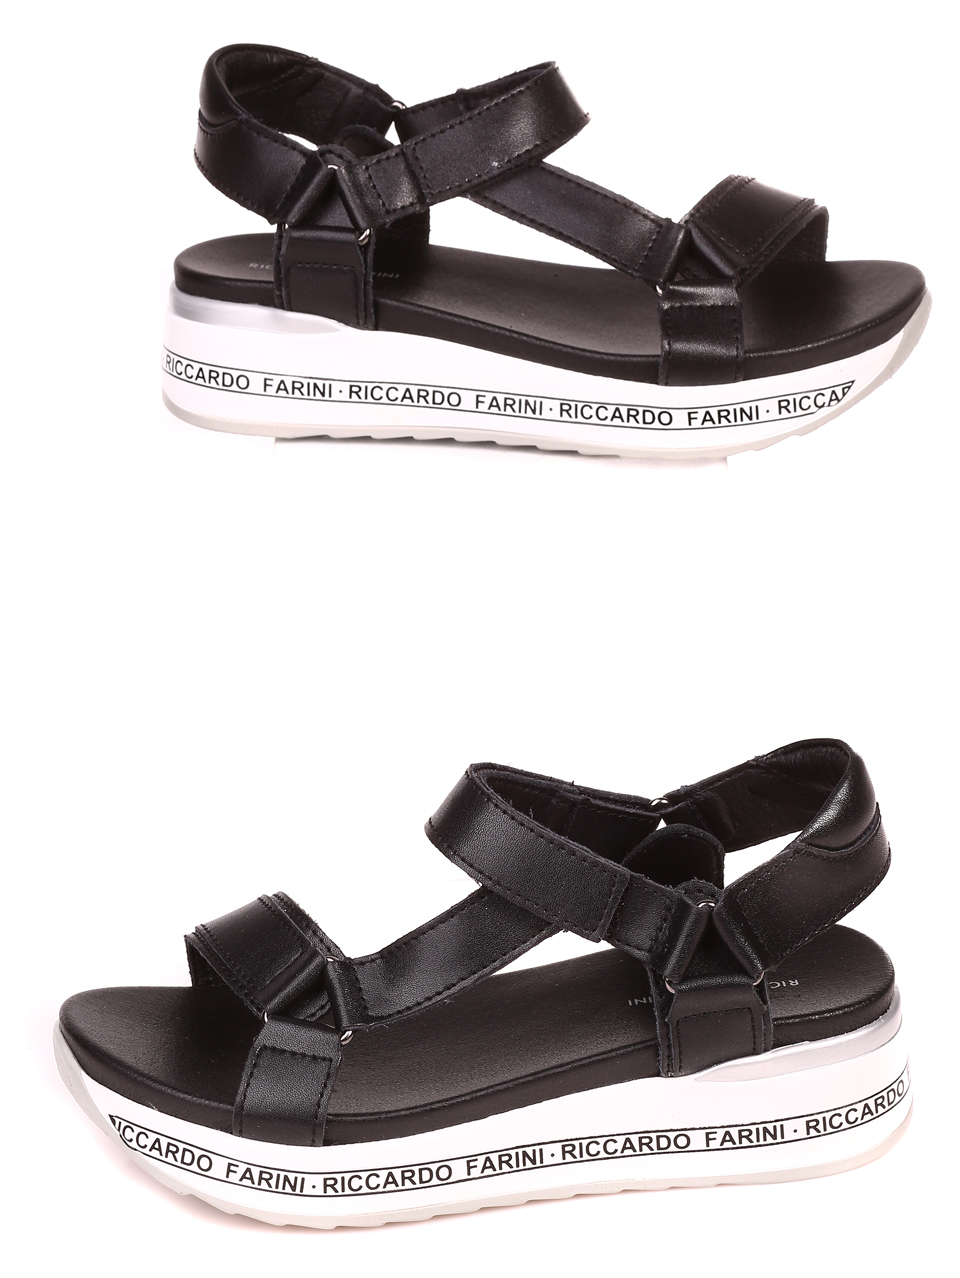 Ежедневни дамски сандали на платформа от естествена кожа 4AF-22146 black